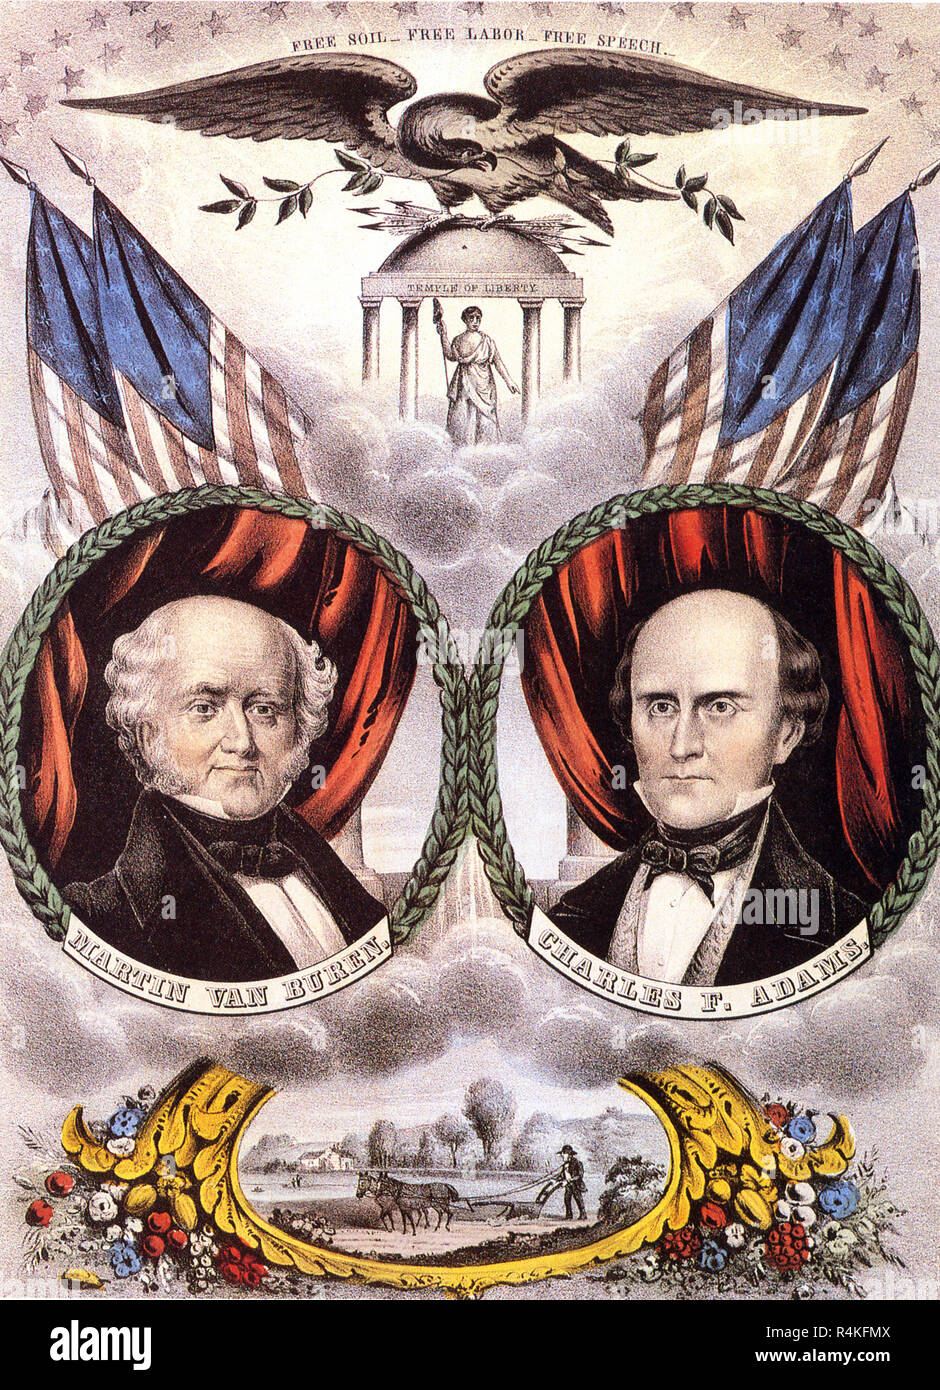 Présidentielle, Buren et Adams, 1848, Nathaniel Currier & Ives, confiture. Banque D'Images